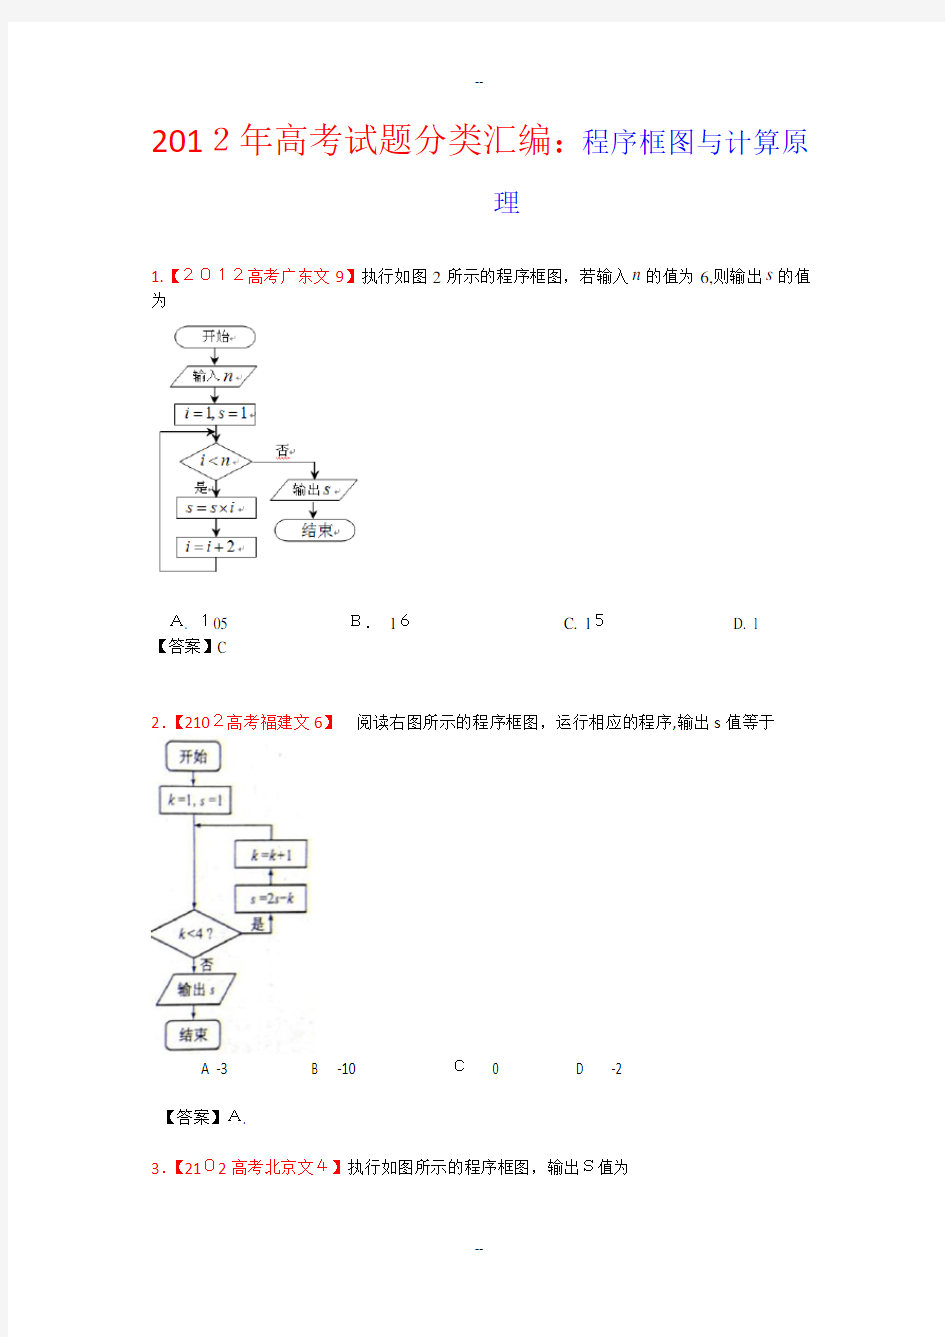 高考试题文科数学分类汇编程序框图与计算原理